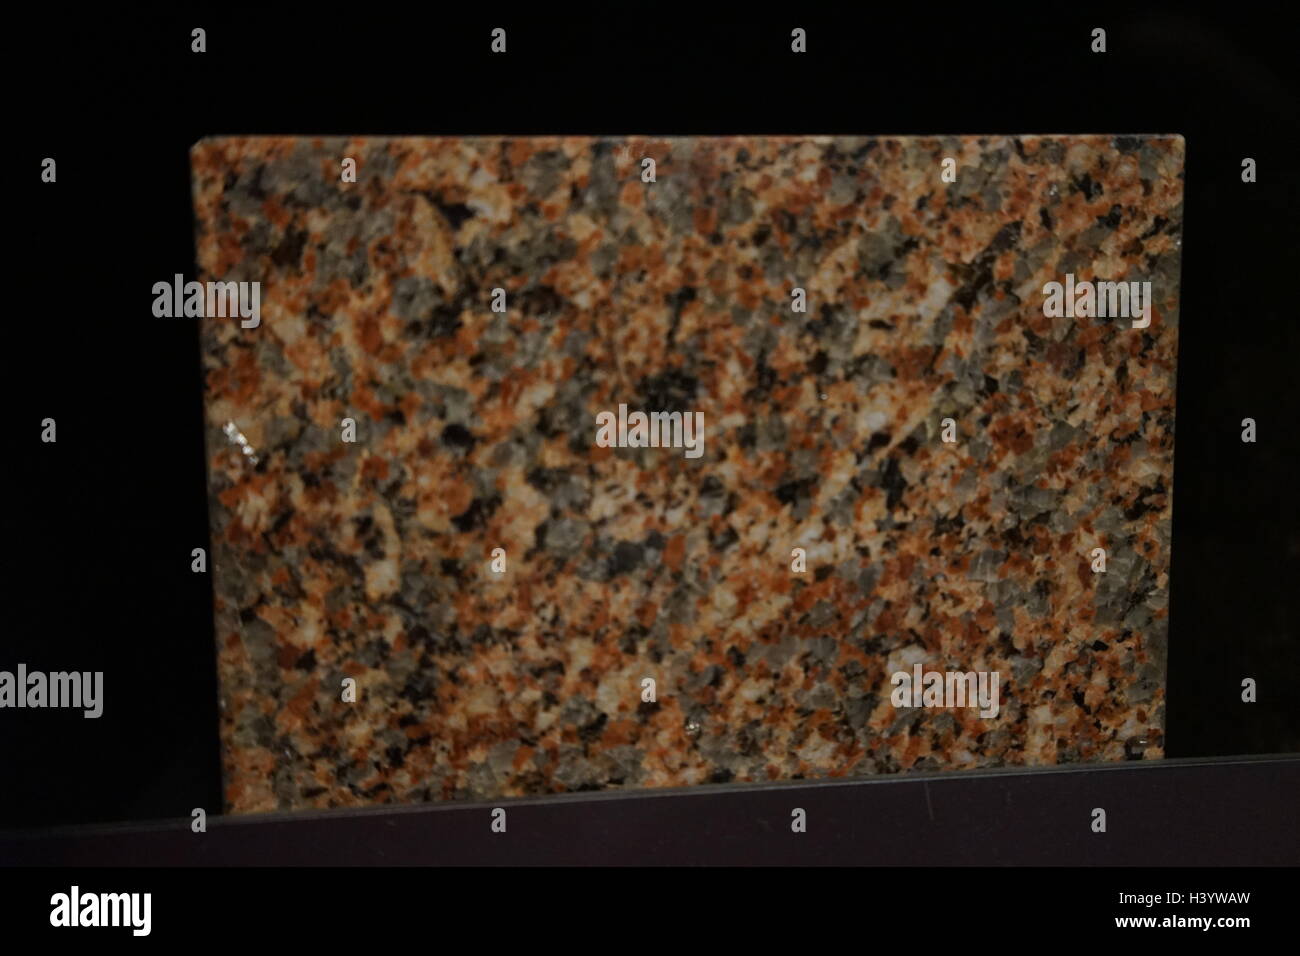 Stichprobe von Granit, eine häufige Art von Felsische aufdringlich Eruptivgestein, das Granulat und Phaneritic in der Textur. Vom 21. Jahrhundert Stockfoto